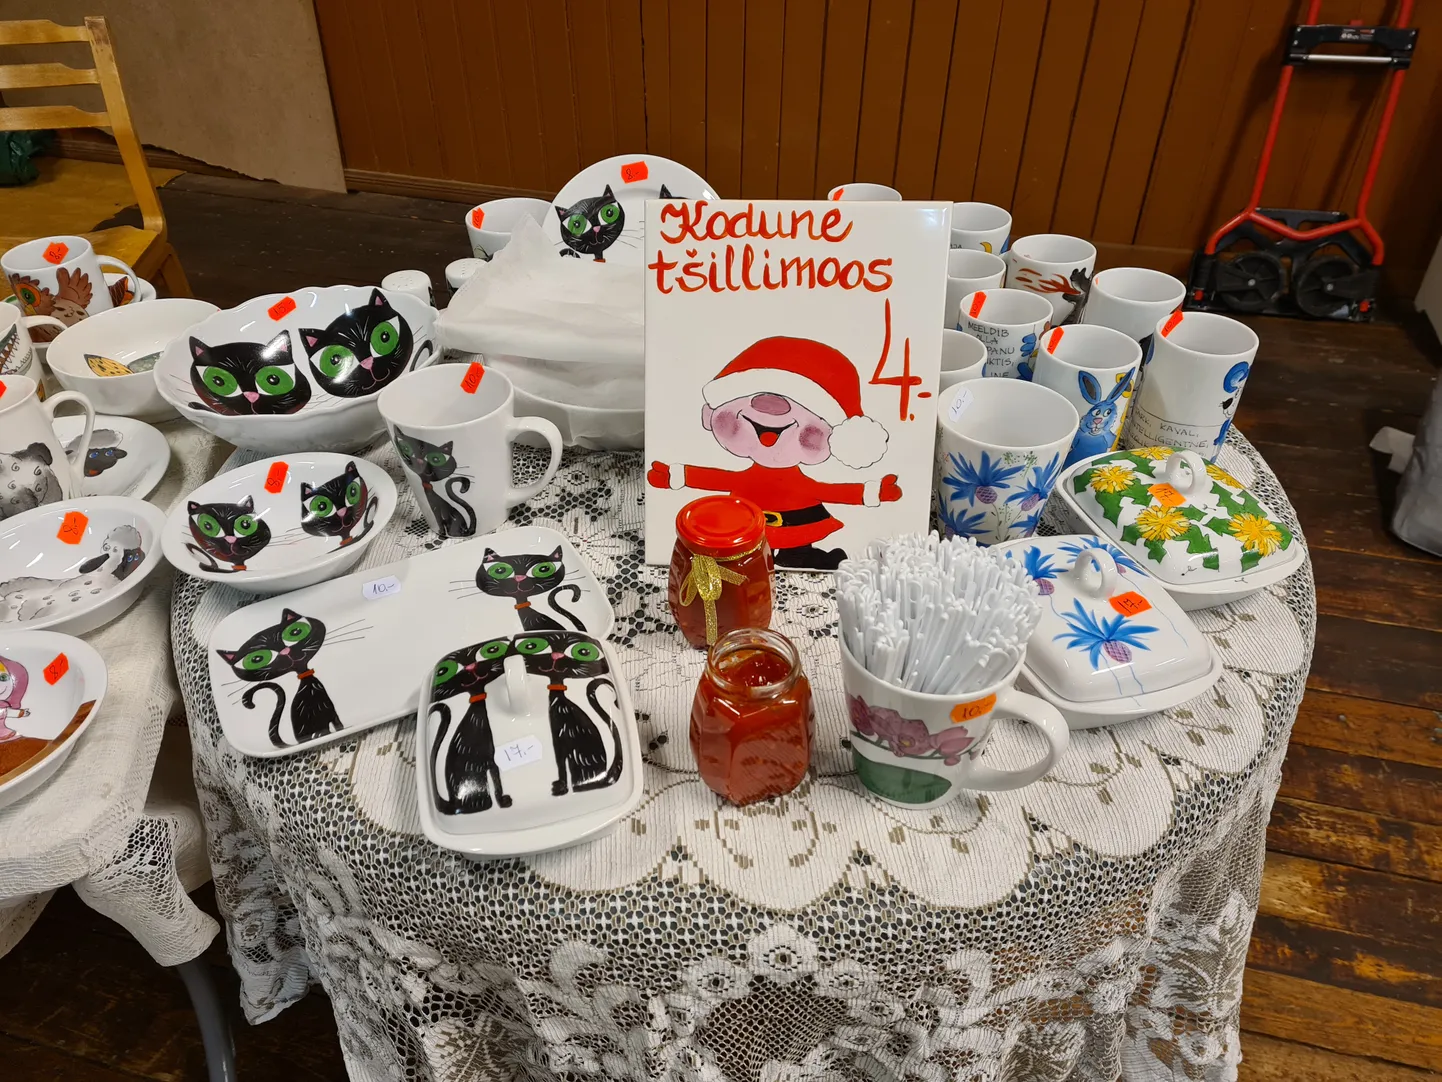 Abja-Paluojal sai laupäeval osa jõululaadast, kus pakuti kaupa mitmele maitsele.